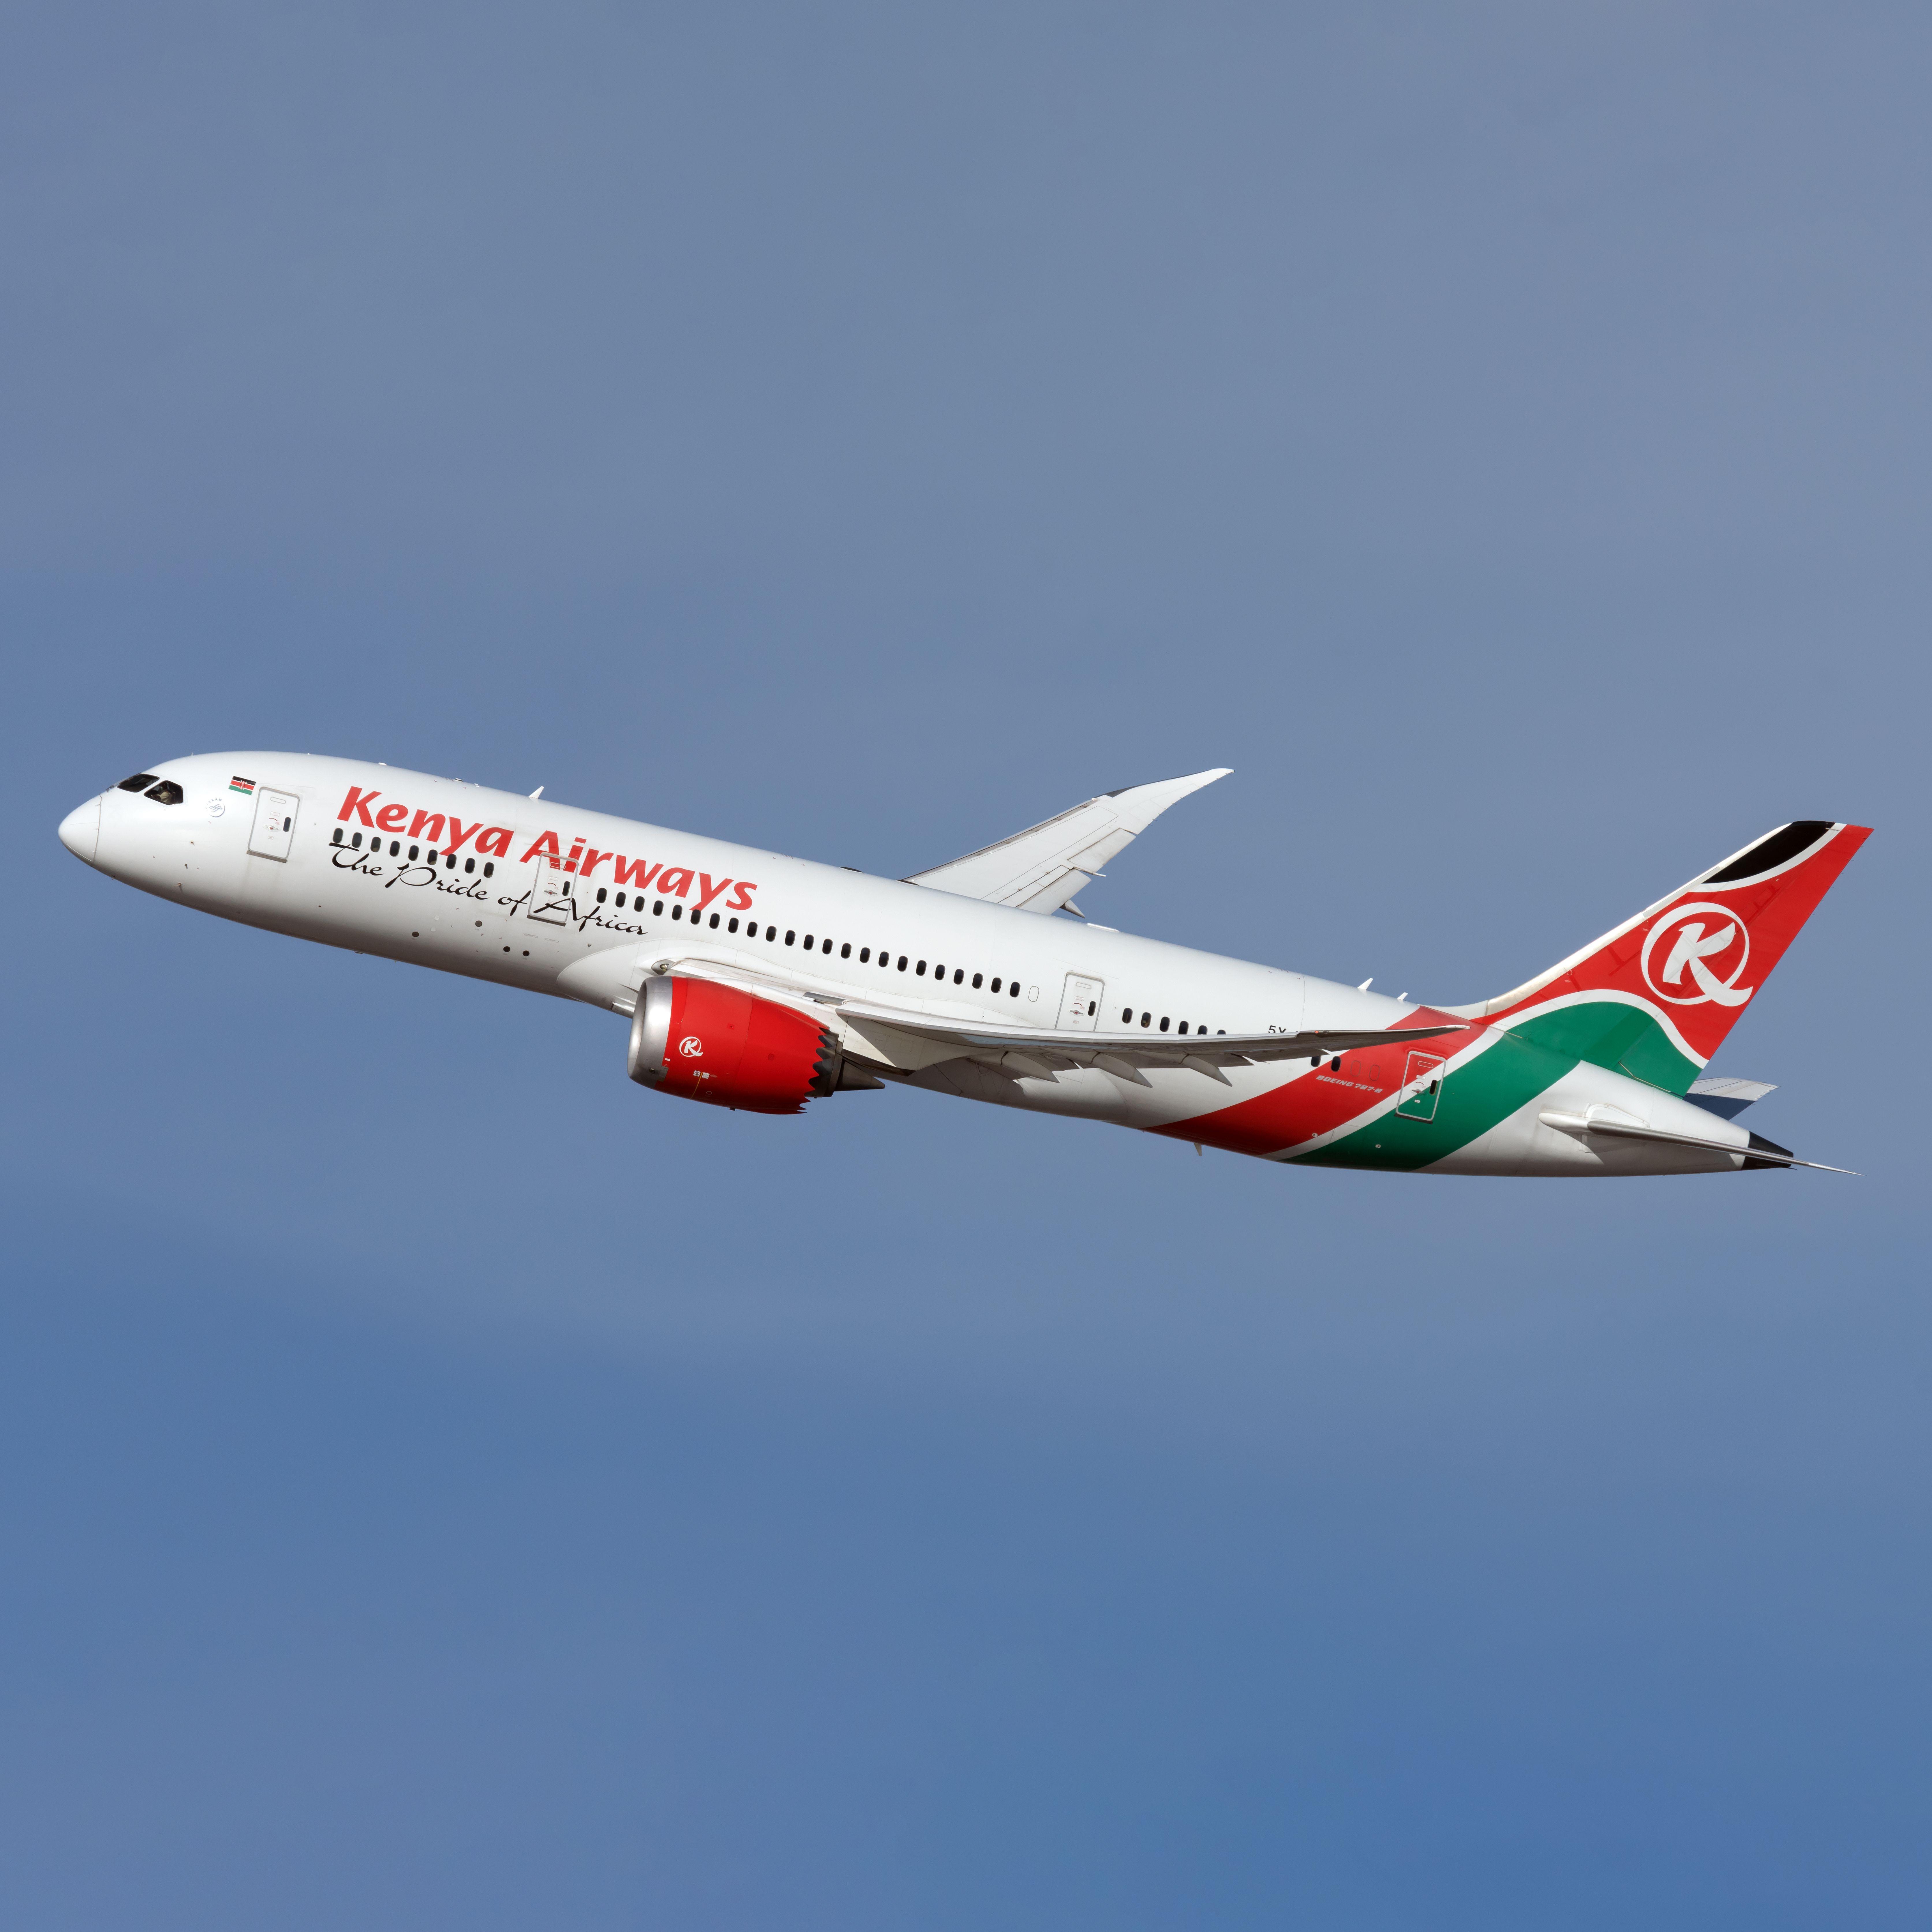 Kenya Airways Boeing 787-8 Dreamliner in-flight.